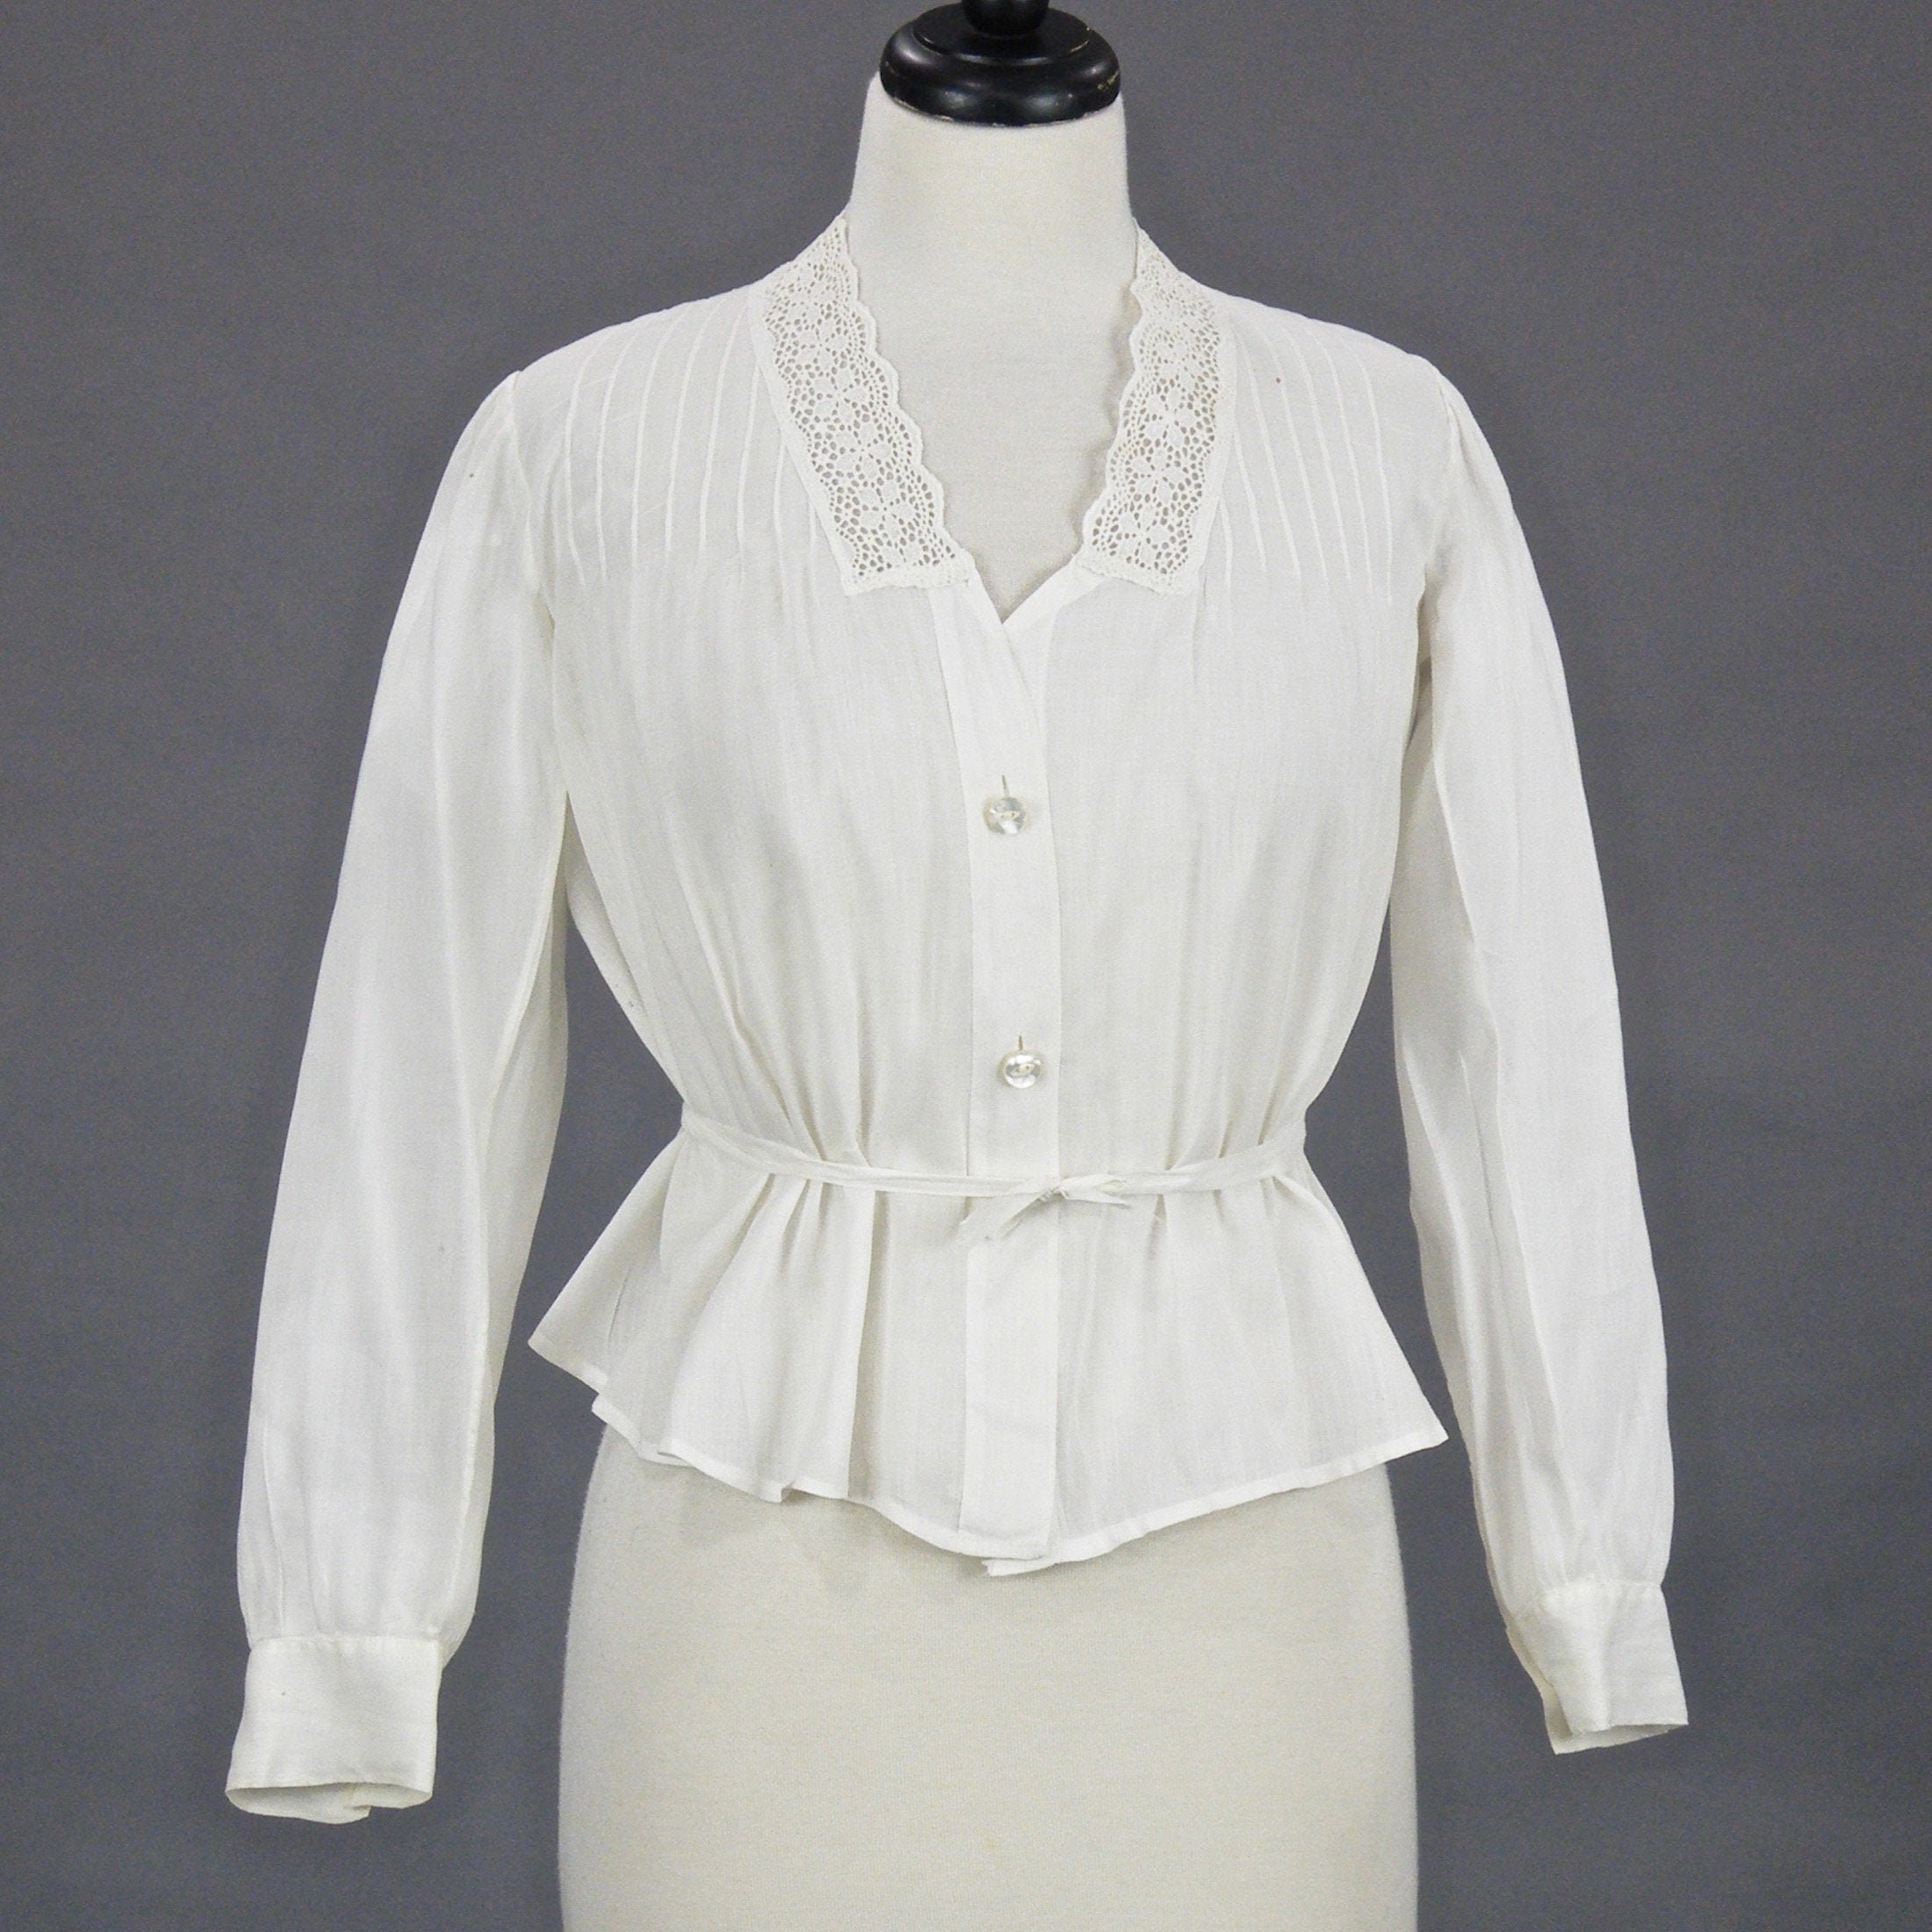 Late 1910s Antique White Cotton Lace Blouse, 1919 Blouse, Medium